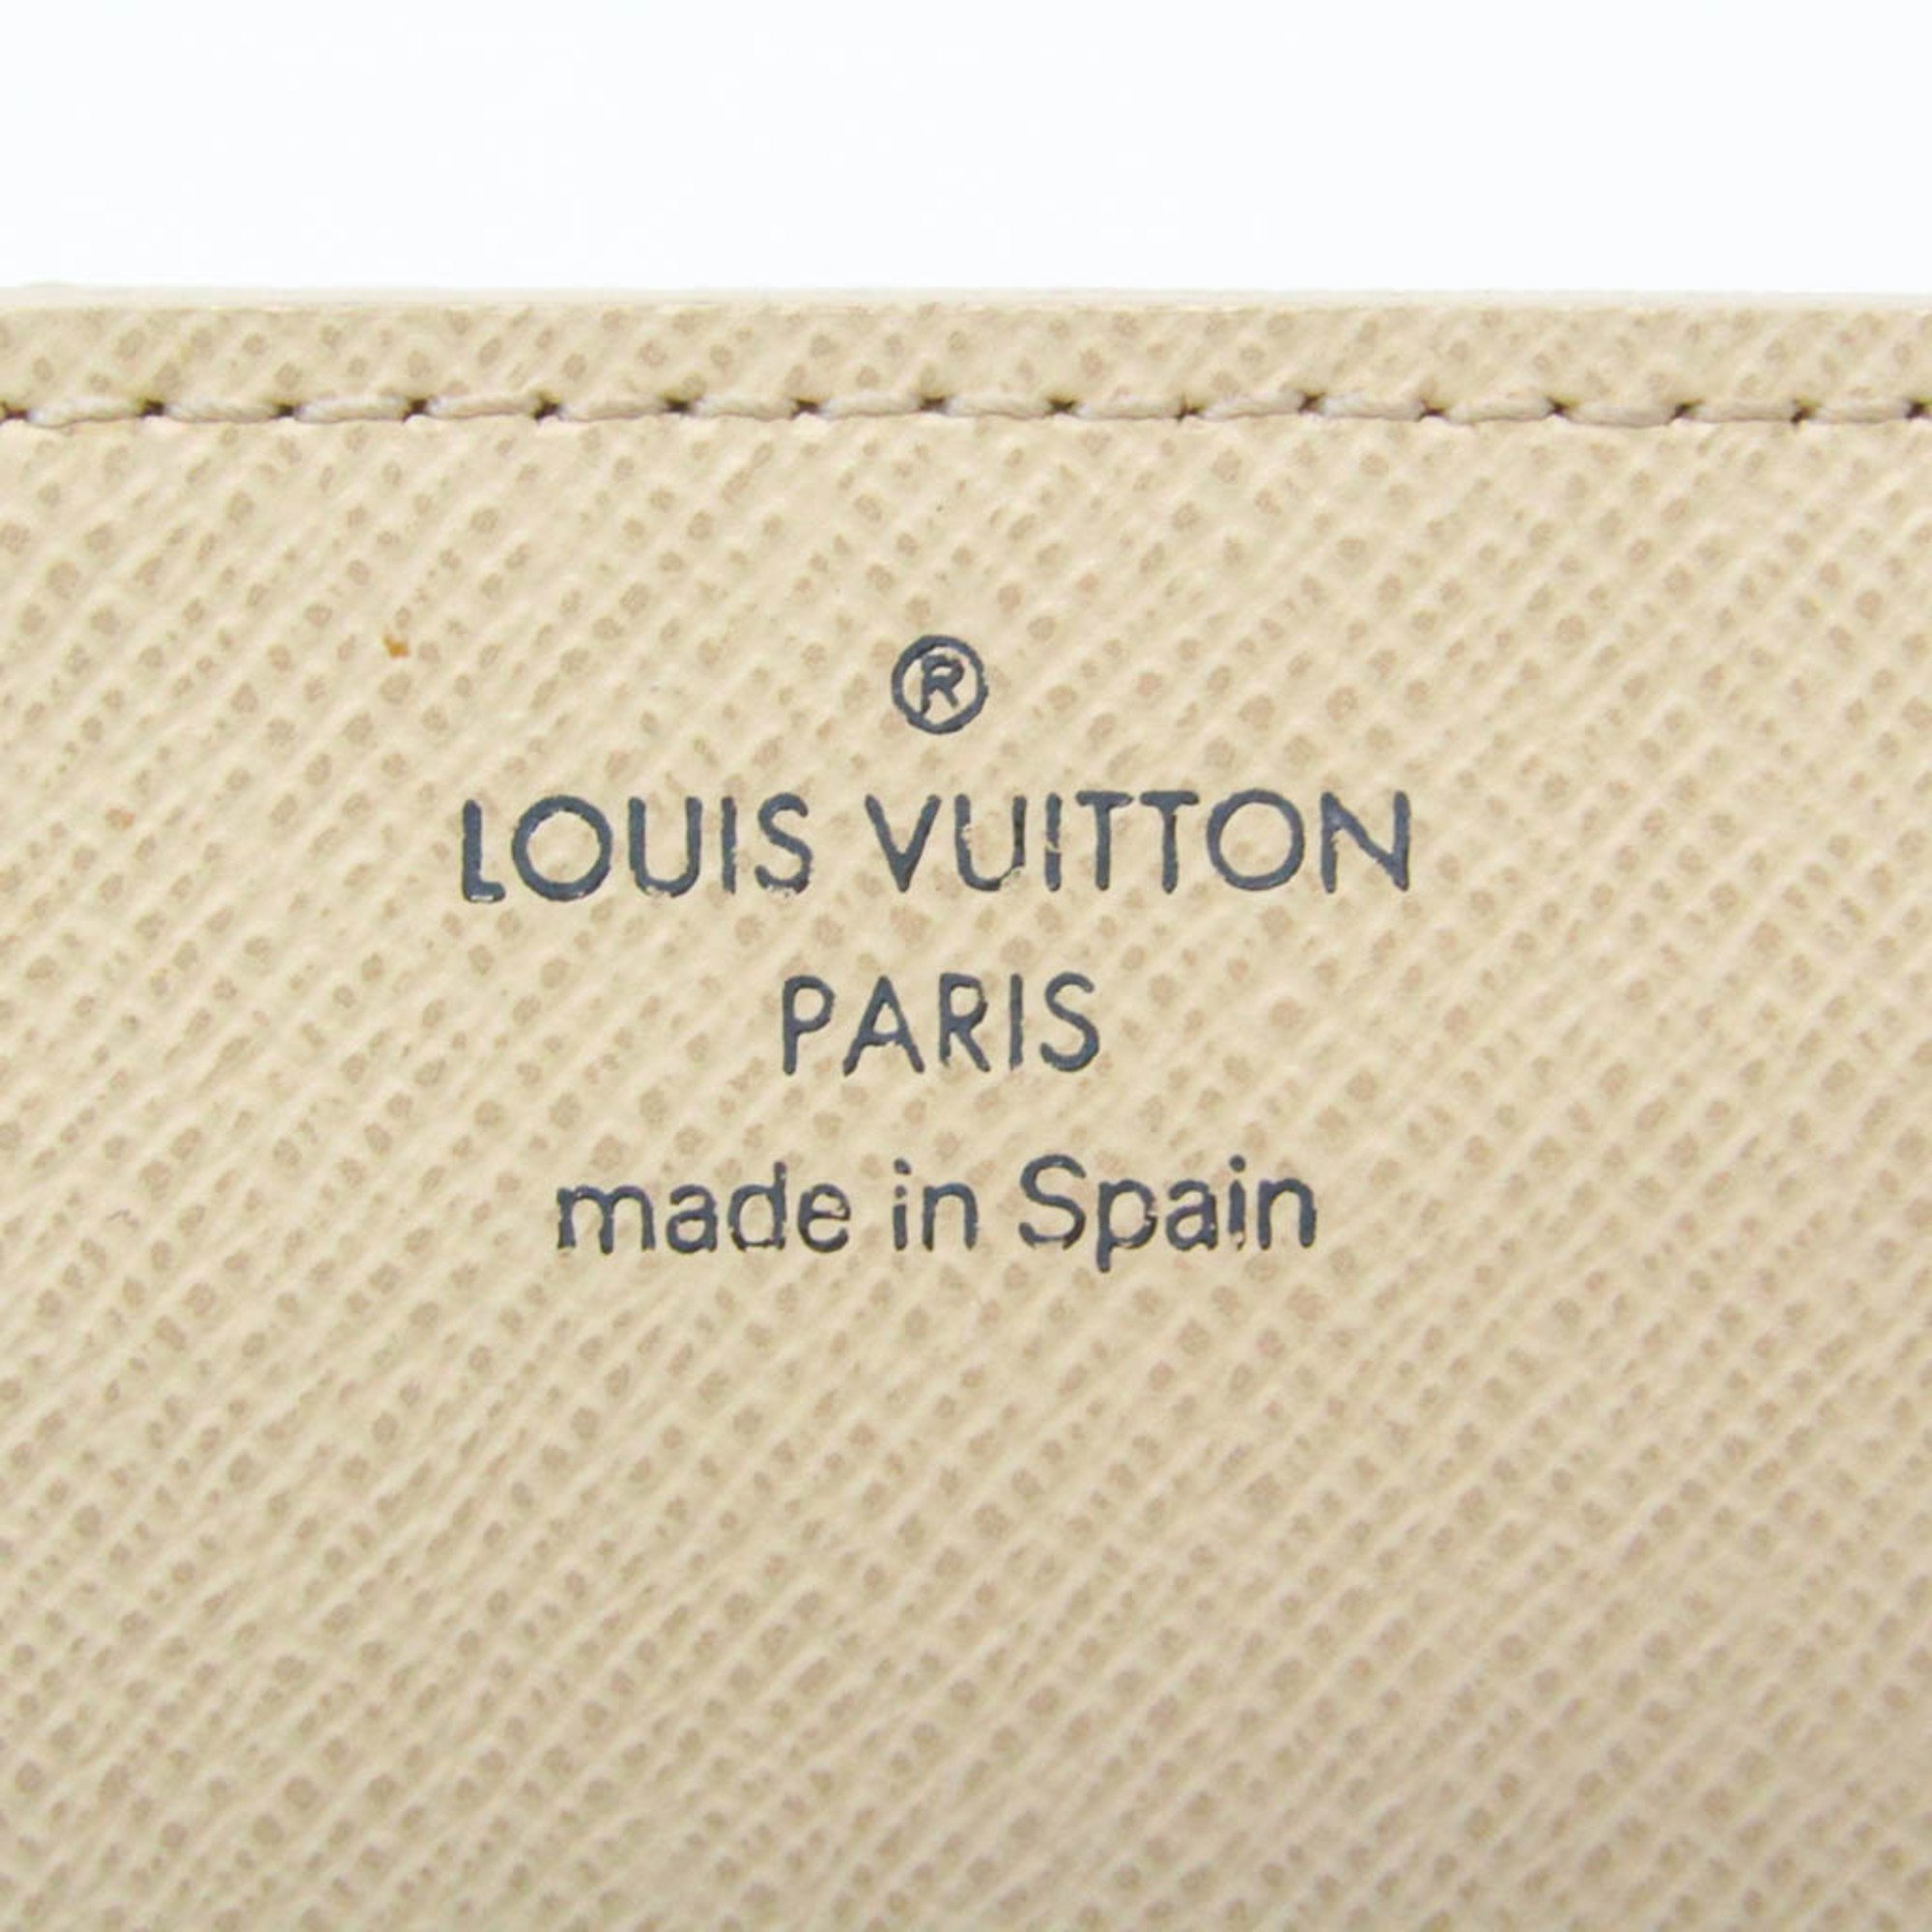 ルイ・ヴィトン(Louis Vuitton) ダミエアズール アンヴェロップ・カルト ドゥ ヴィジット N61746 ダミエアズール 名刺入れ ダミエ・アズール